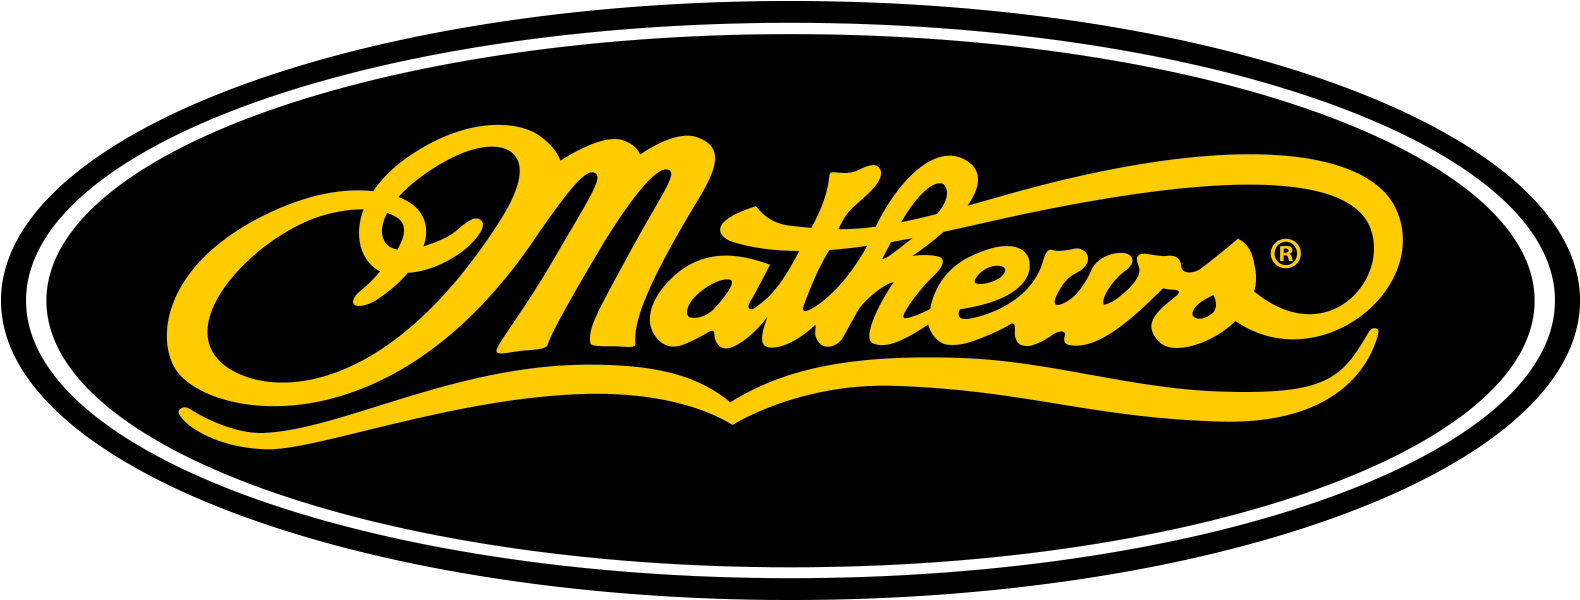 Mathews County Seal20160506 2096 Td8kc3 - Mathews County Seal20160506 2096 Td8kc3 (1800x900)